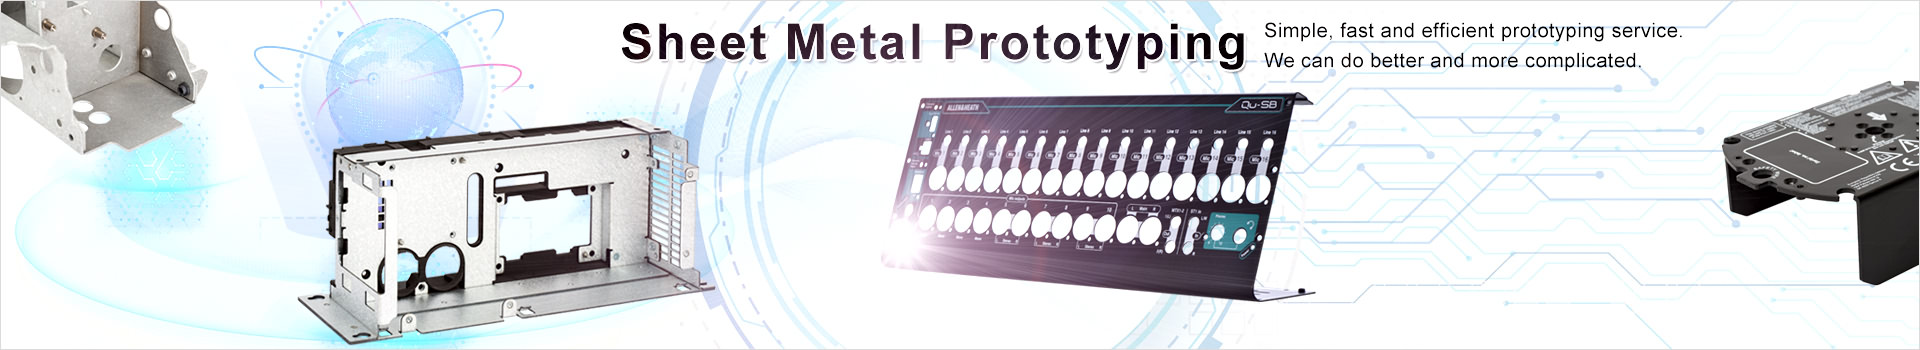 Sheet metal service|Sheet metal prototyping|rapid prototyping|rapid prototyping service